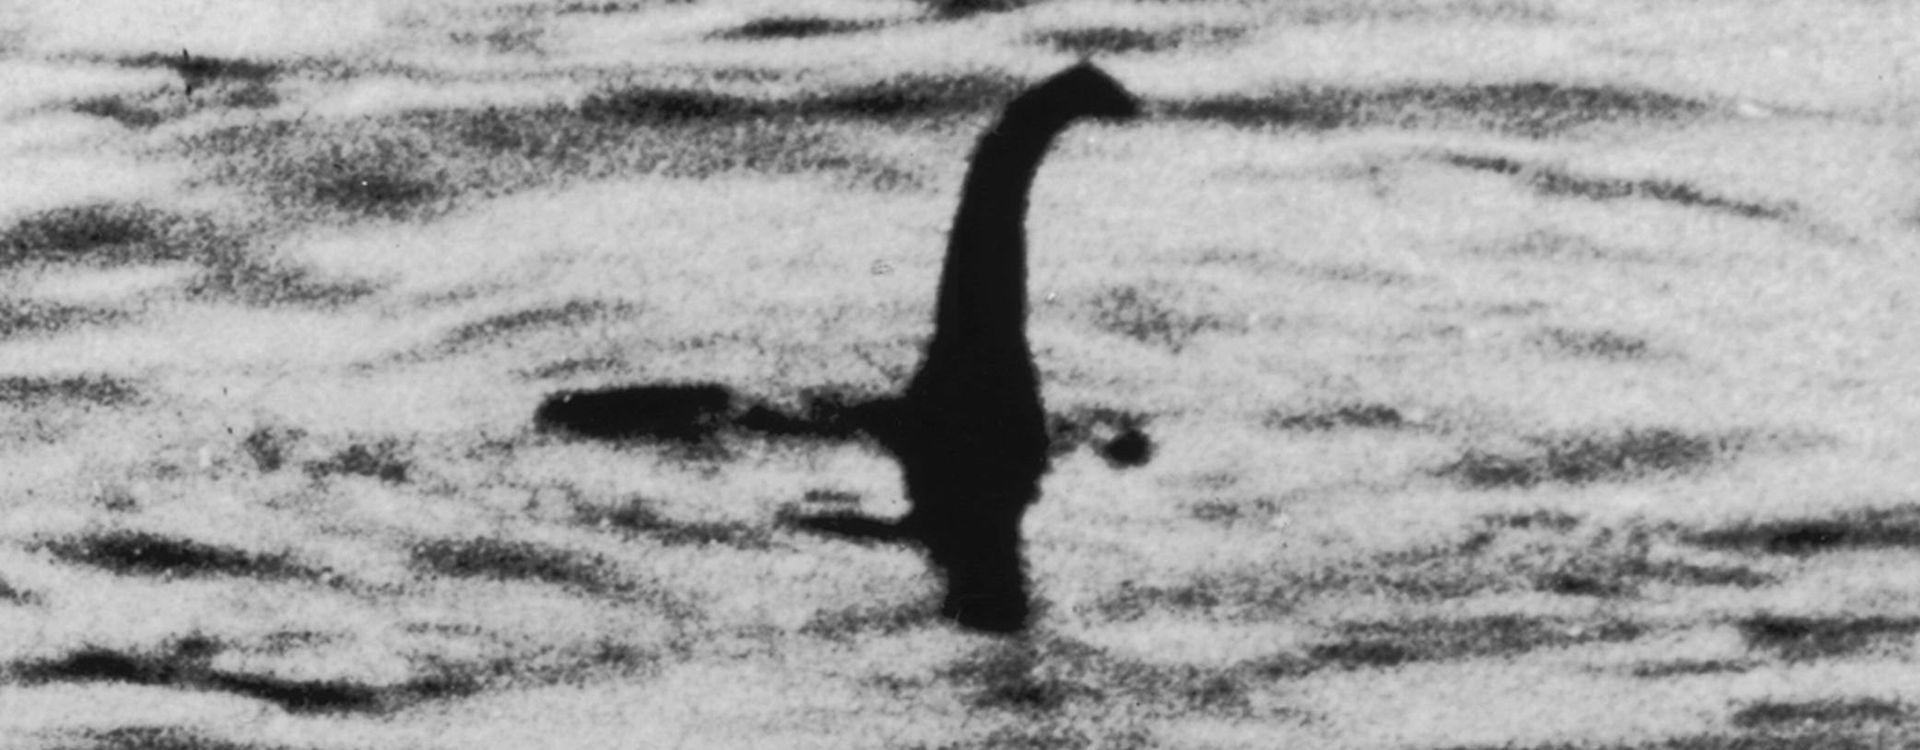 Słynne zdjęcie potwora z Loch Ness